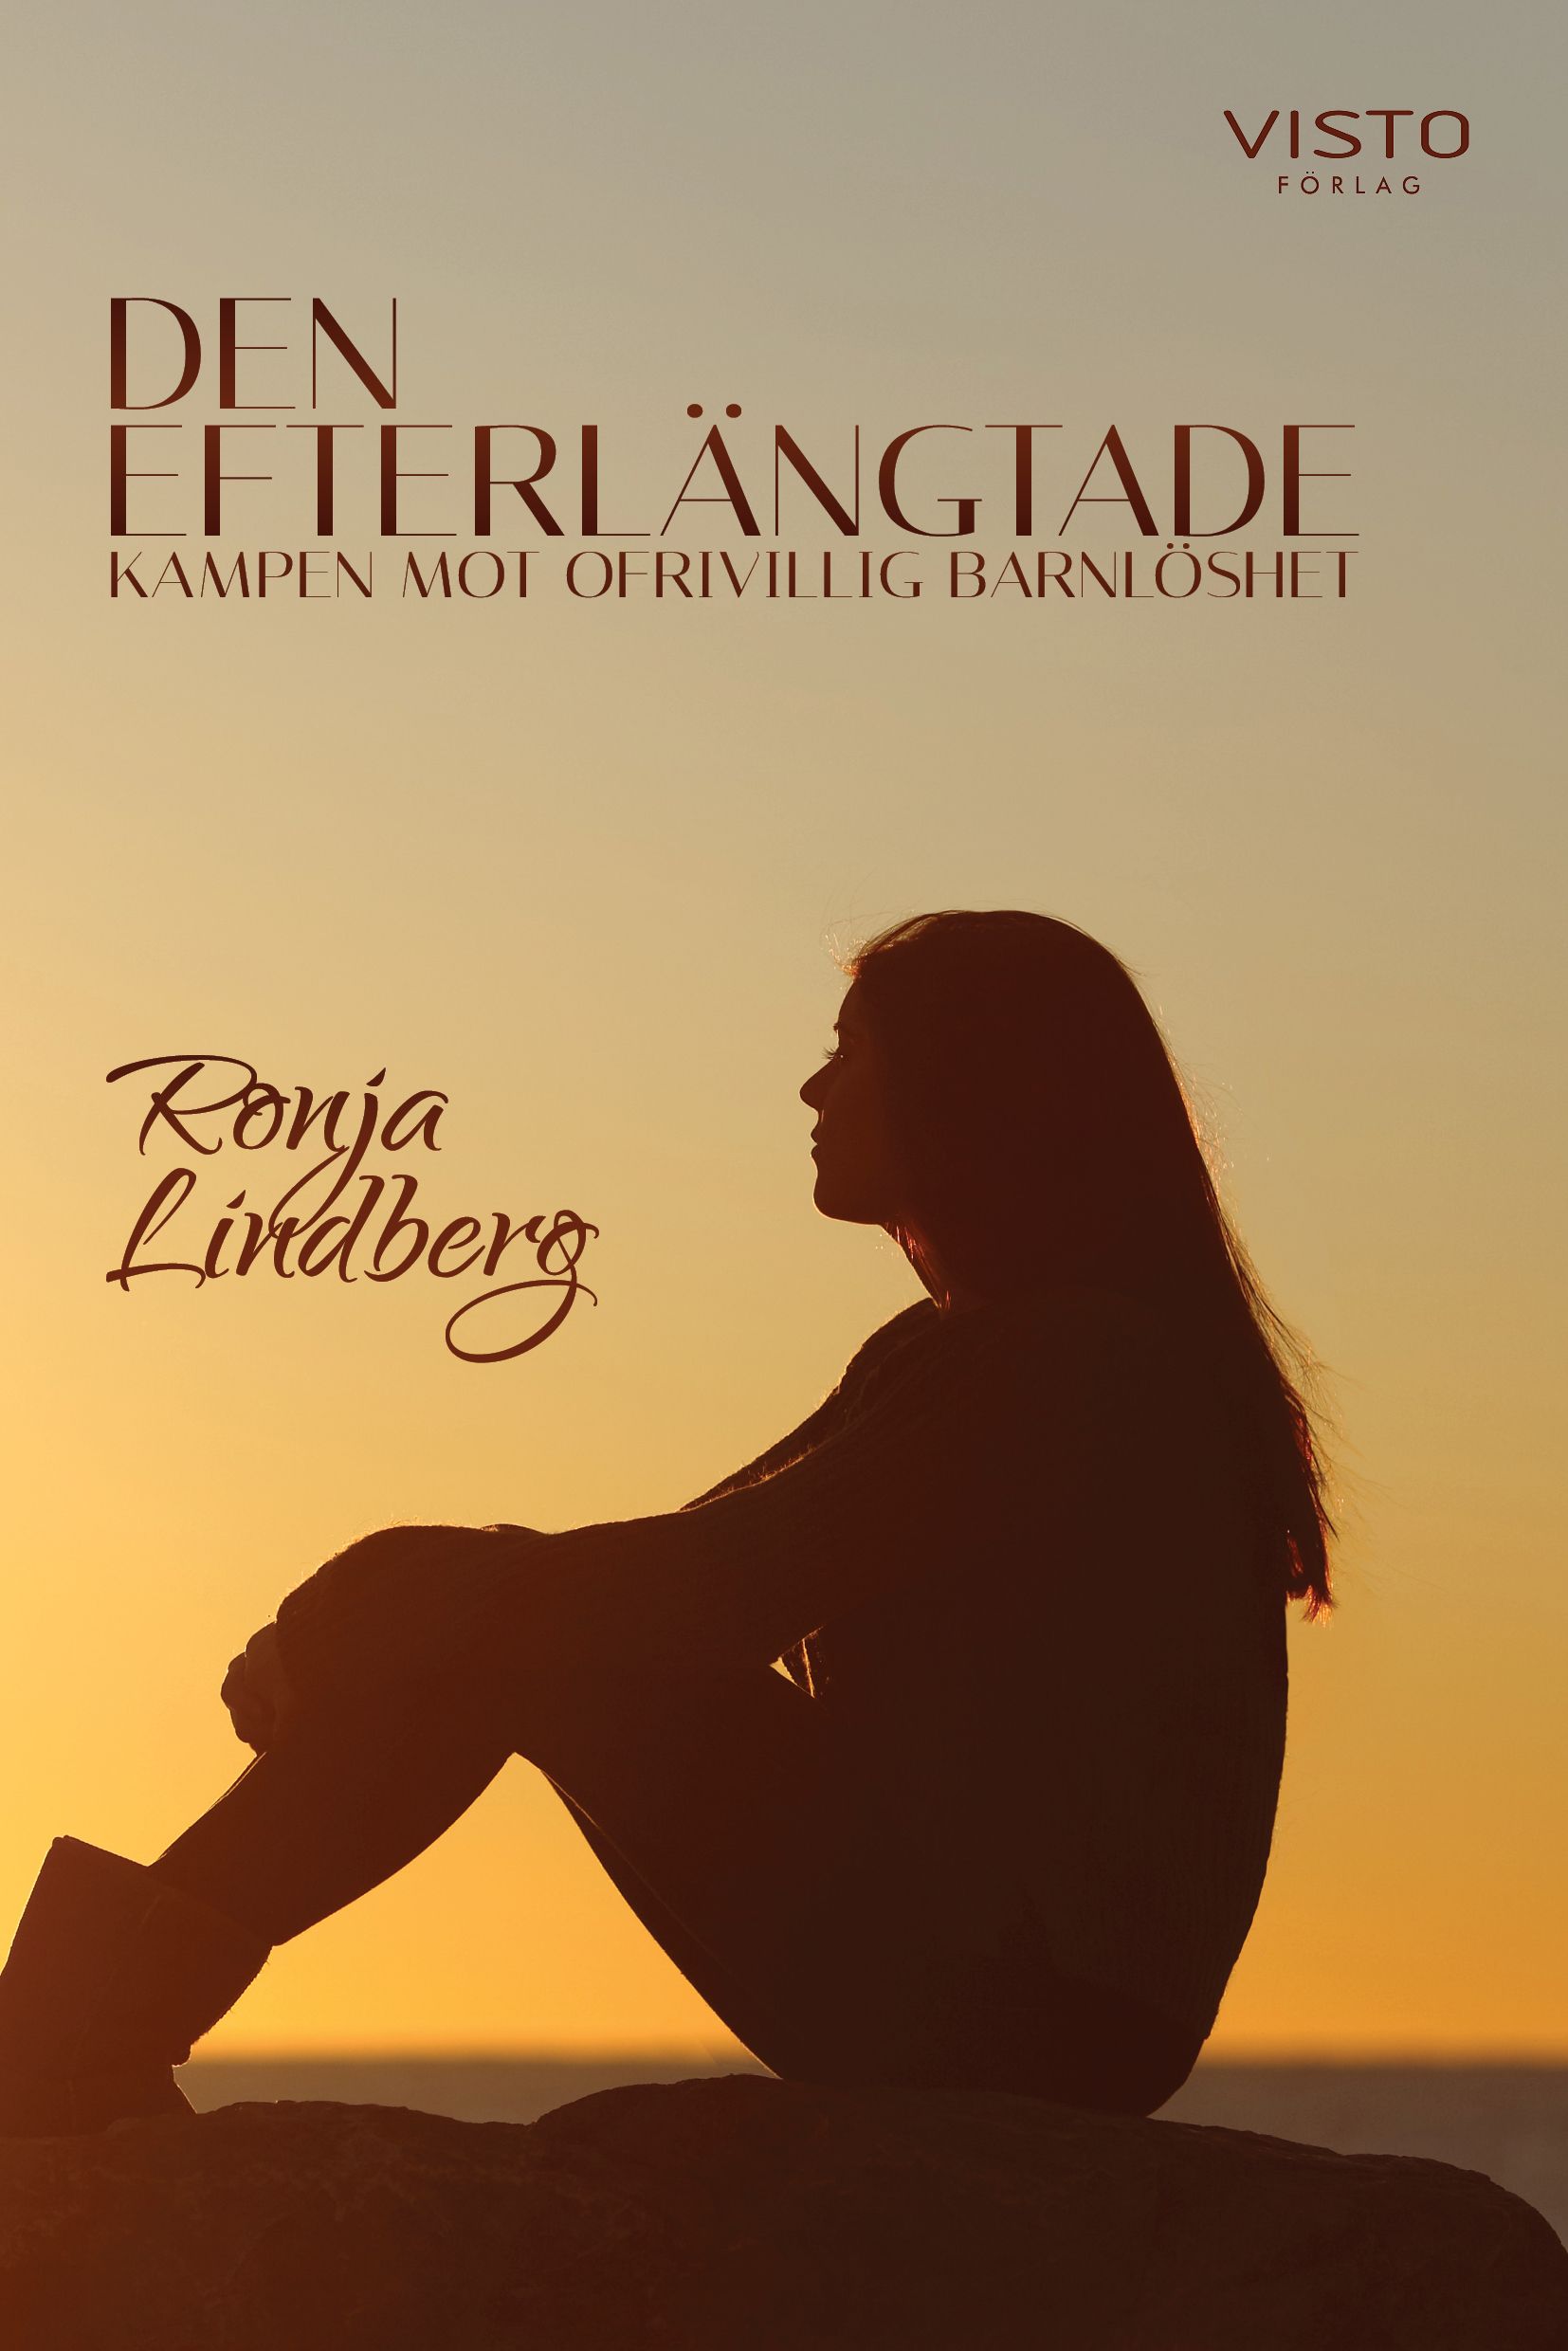 Den efterlängtade, kampen mot ofrivillig barnlöshet, e-bok av Ronja Lindberg